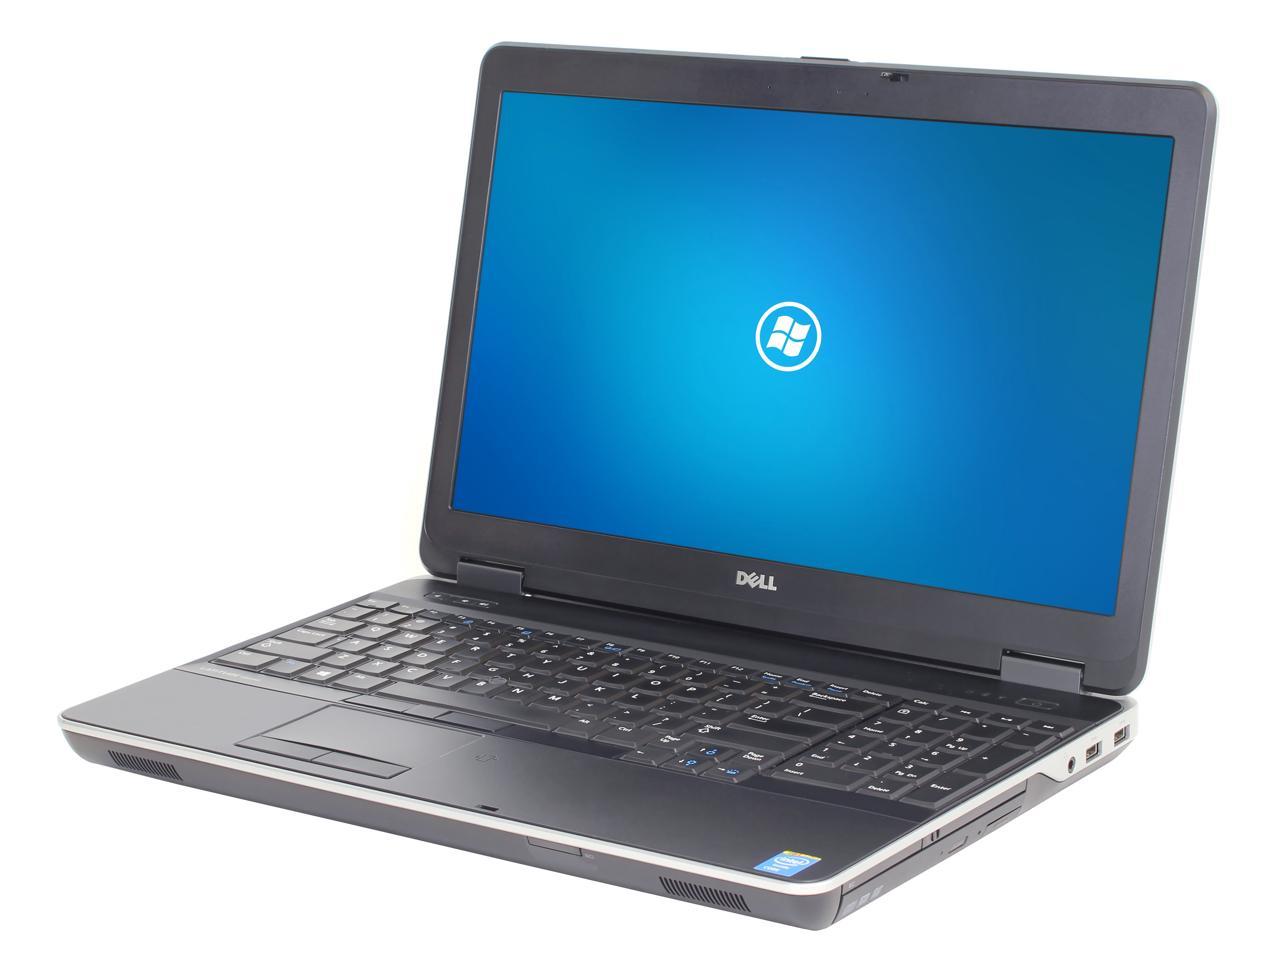 Dell Latitude E6540 15.6" Laptop, Intel Core i7 4600M 2.9Ghz, 8GB DDR3, 960GB SSD Hard Drive, Webcam, HDMI, DVDRW, Windows 10 Pro x64